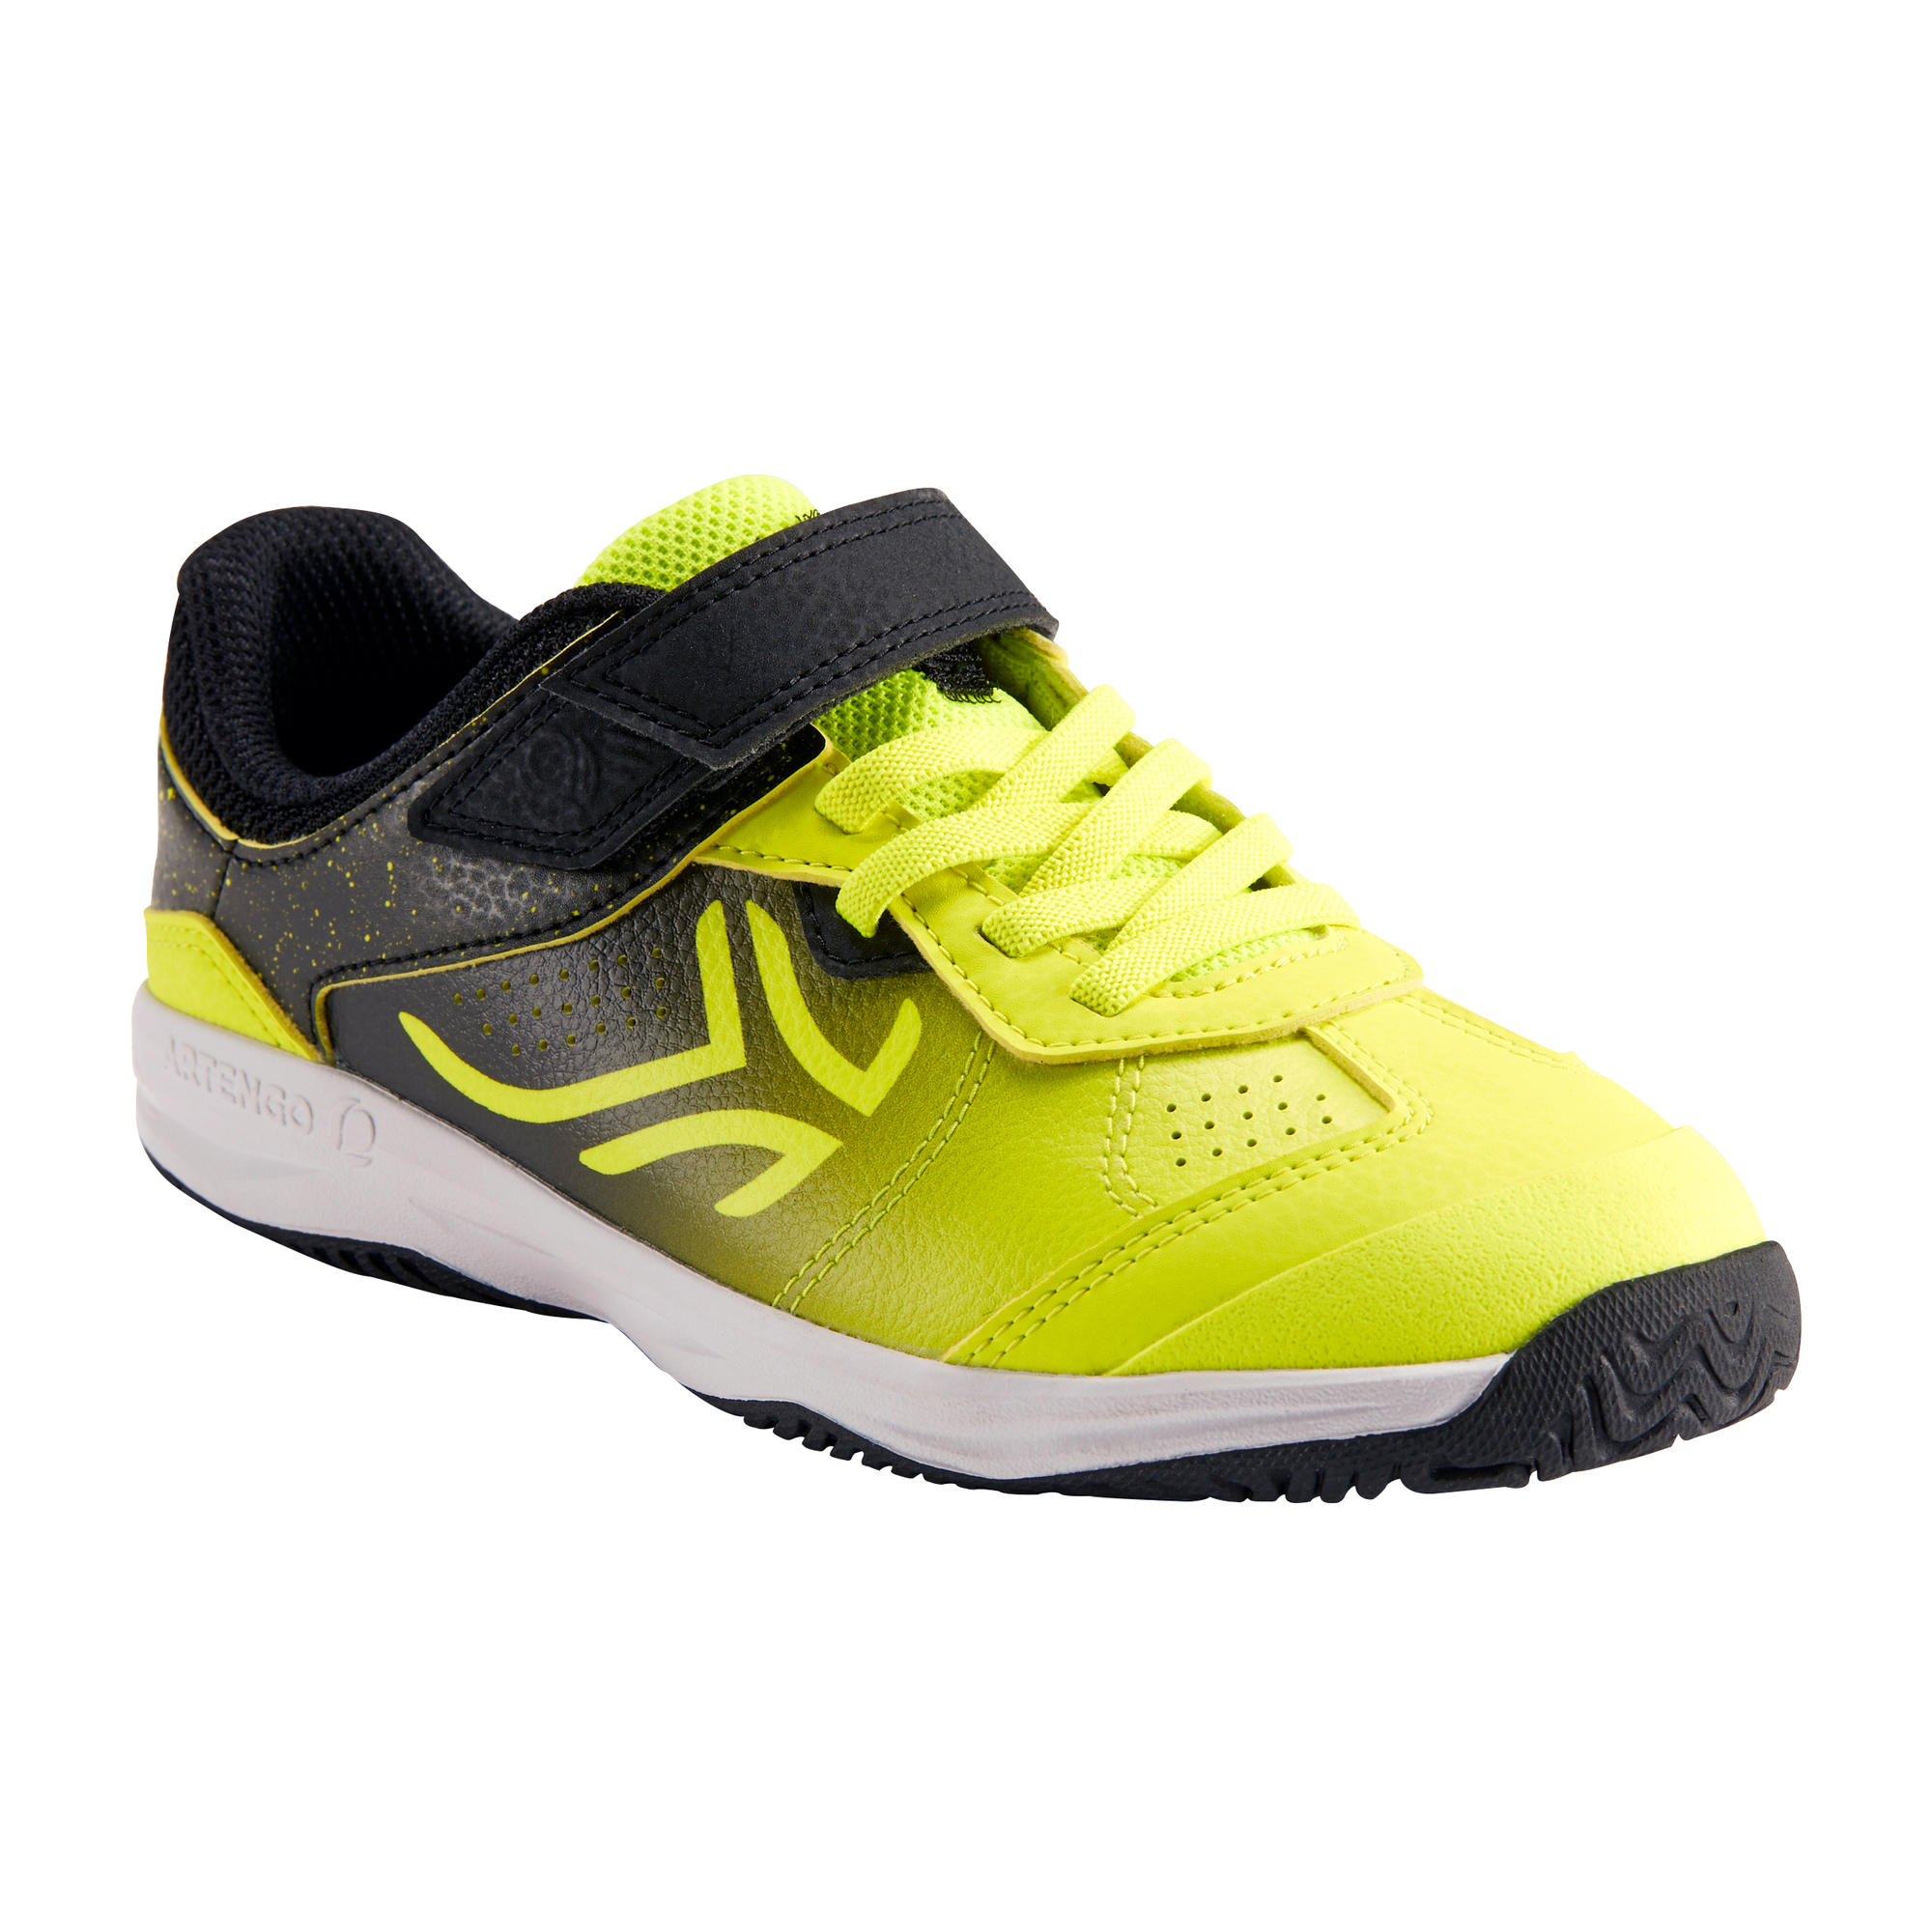 artengo tennis shoes review